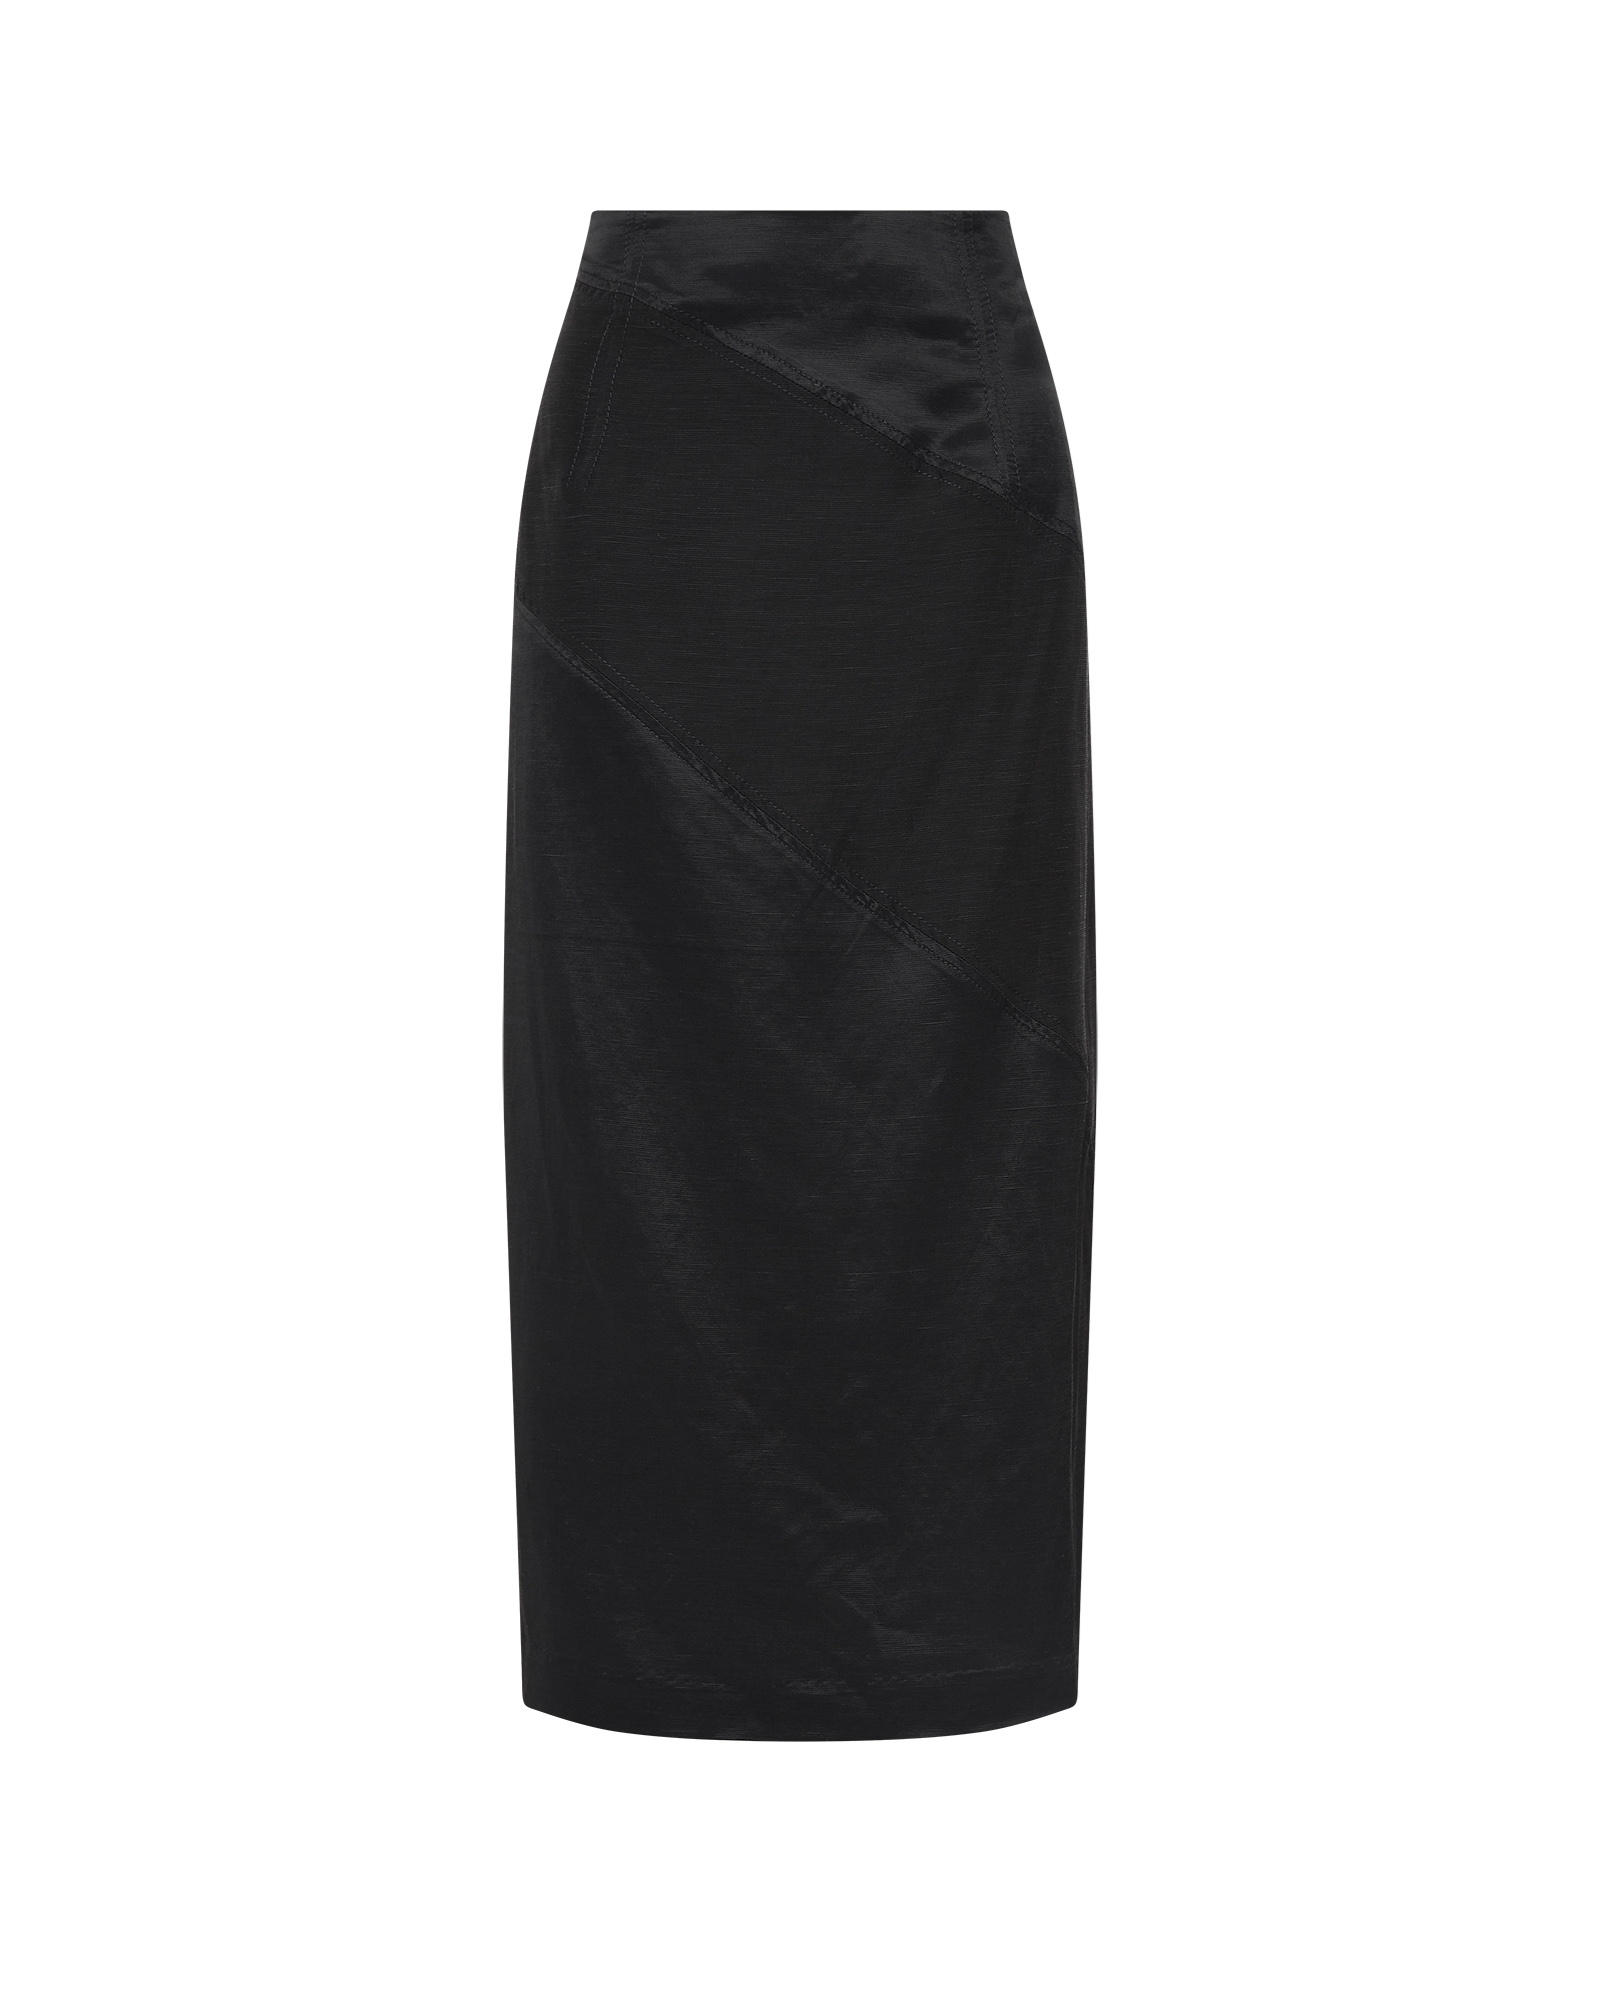 Panel Detail Midi Skirt | Buy Skirts Online - Cue